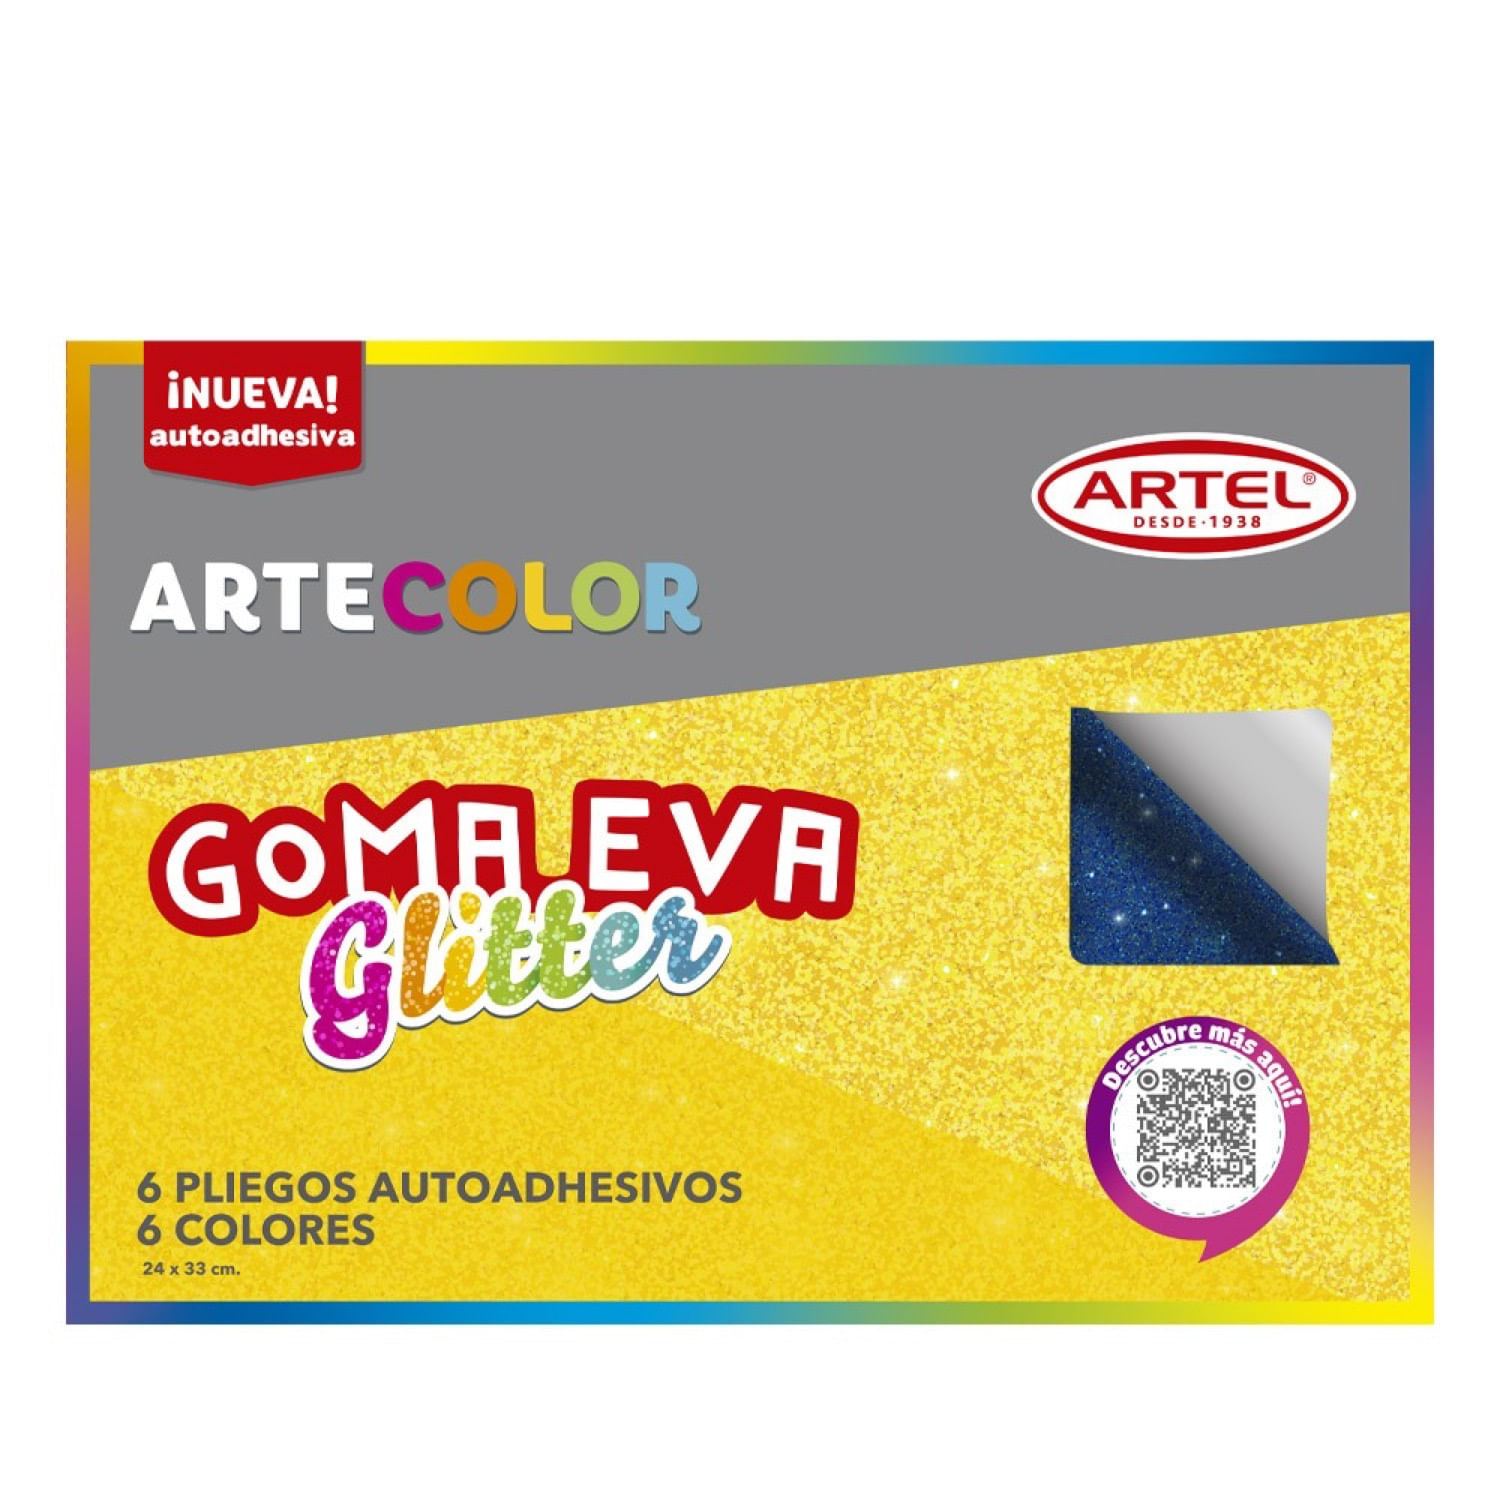 Goma Eva Glitter Artecolor Con Adhesivo